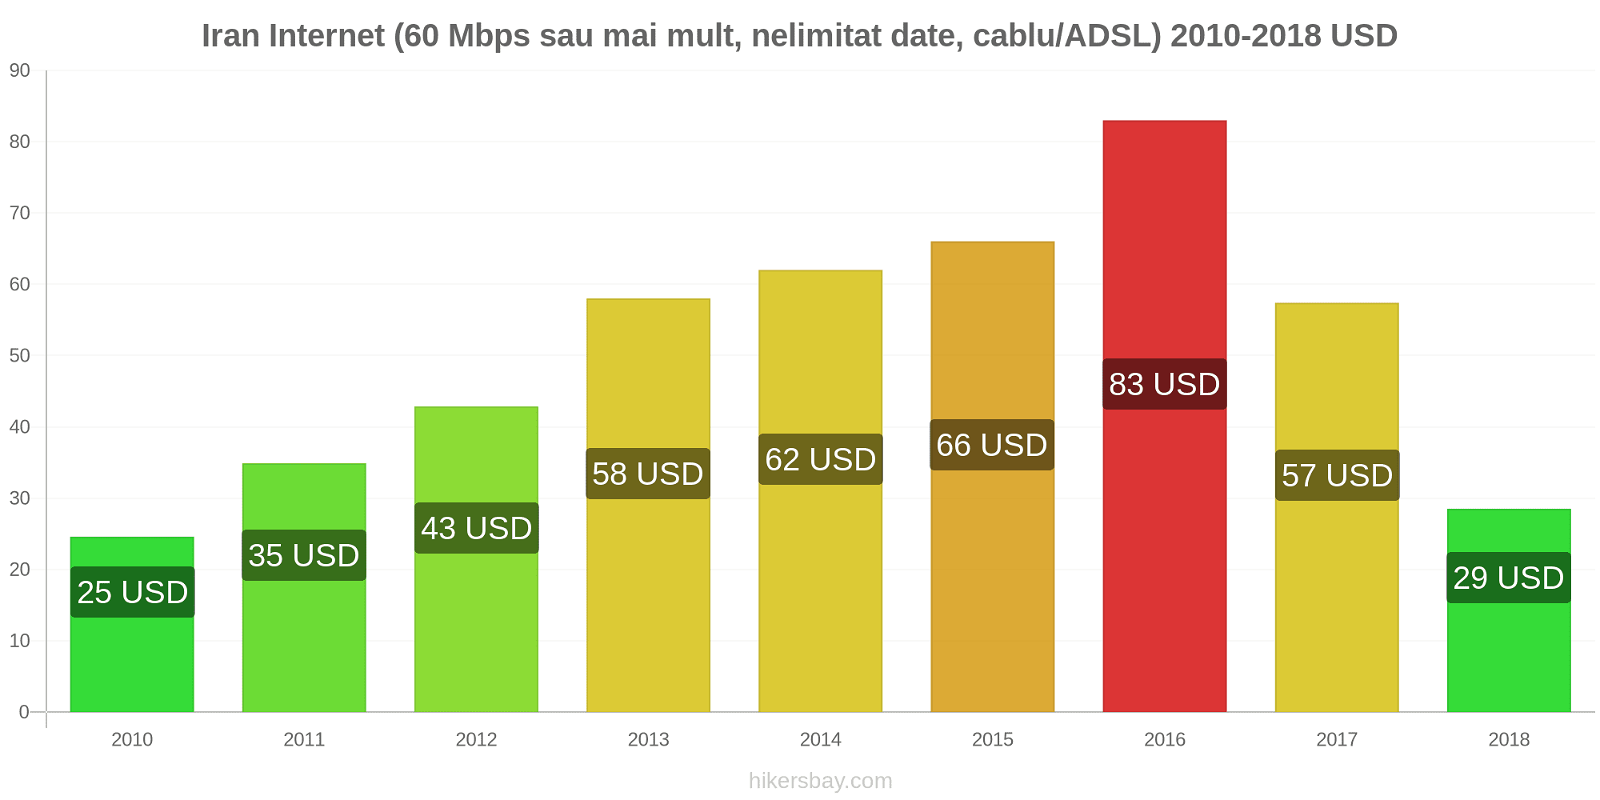 Iran schimbări de prețuri Internet (60 Mbps sau mai mult, date nelimitate, cablu/ADSL) hikersbay.com